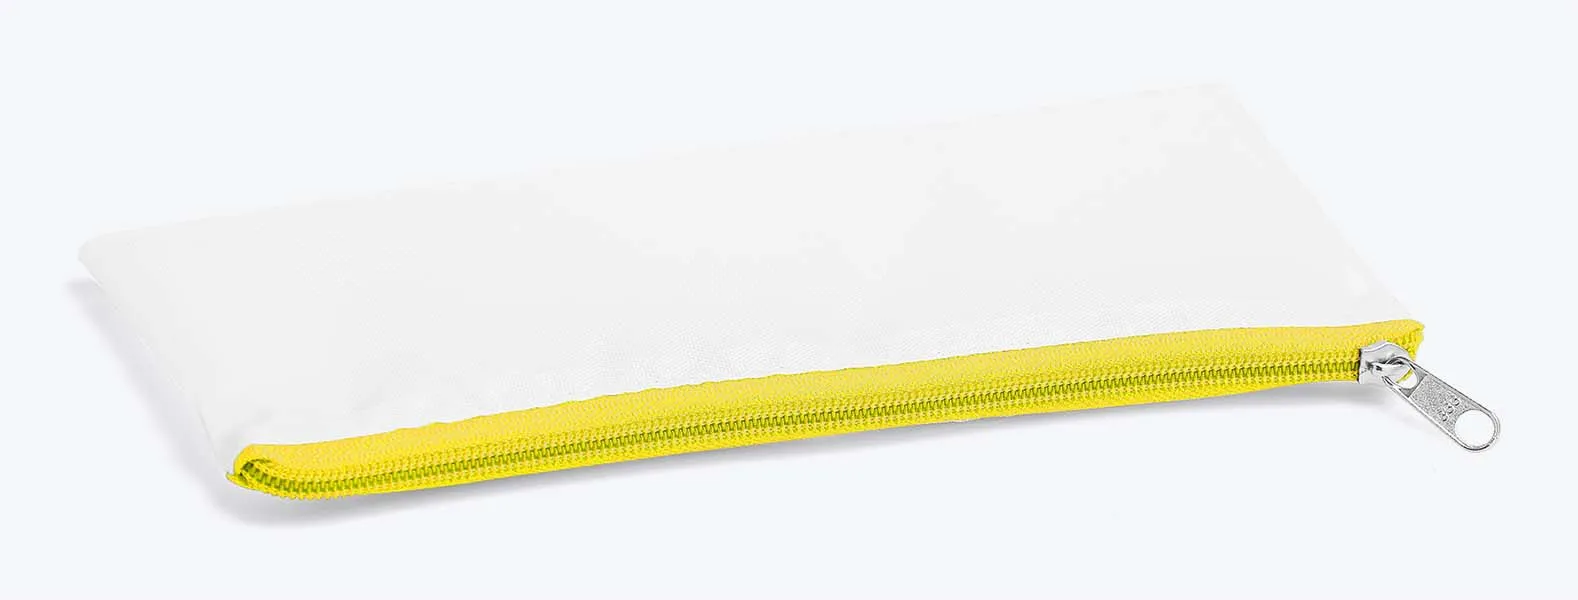 Necessaire na cor amarela confeccionada em Nylon 210 resinado. Conta com fechamento em zíper nas cores preta, azul, vermelha, verde, amarelo, laranja, roxo e rosa.